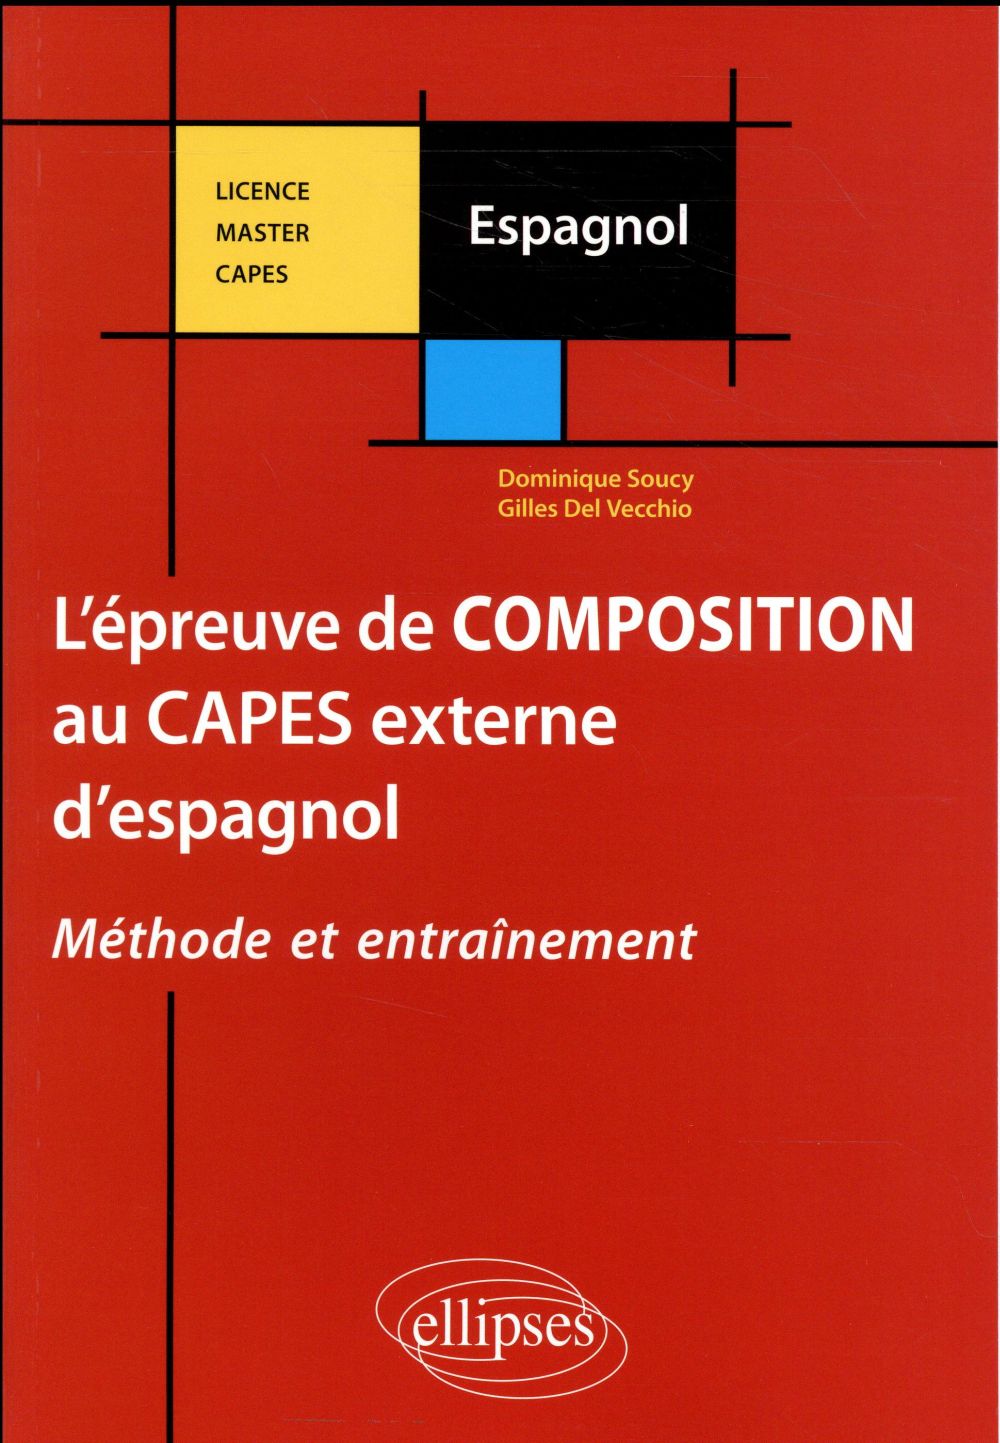 L'EPREUVE DE COMPOSITION AU CAPES EXTERNE D'ESPAGNOL. METHODE ET ENTRAINEMENT.